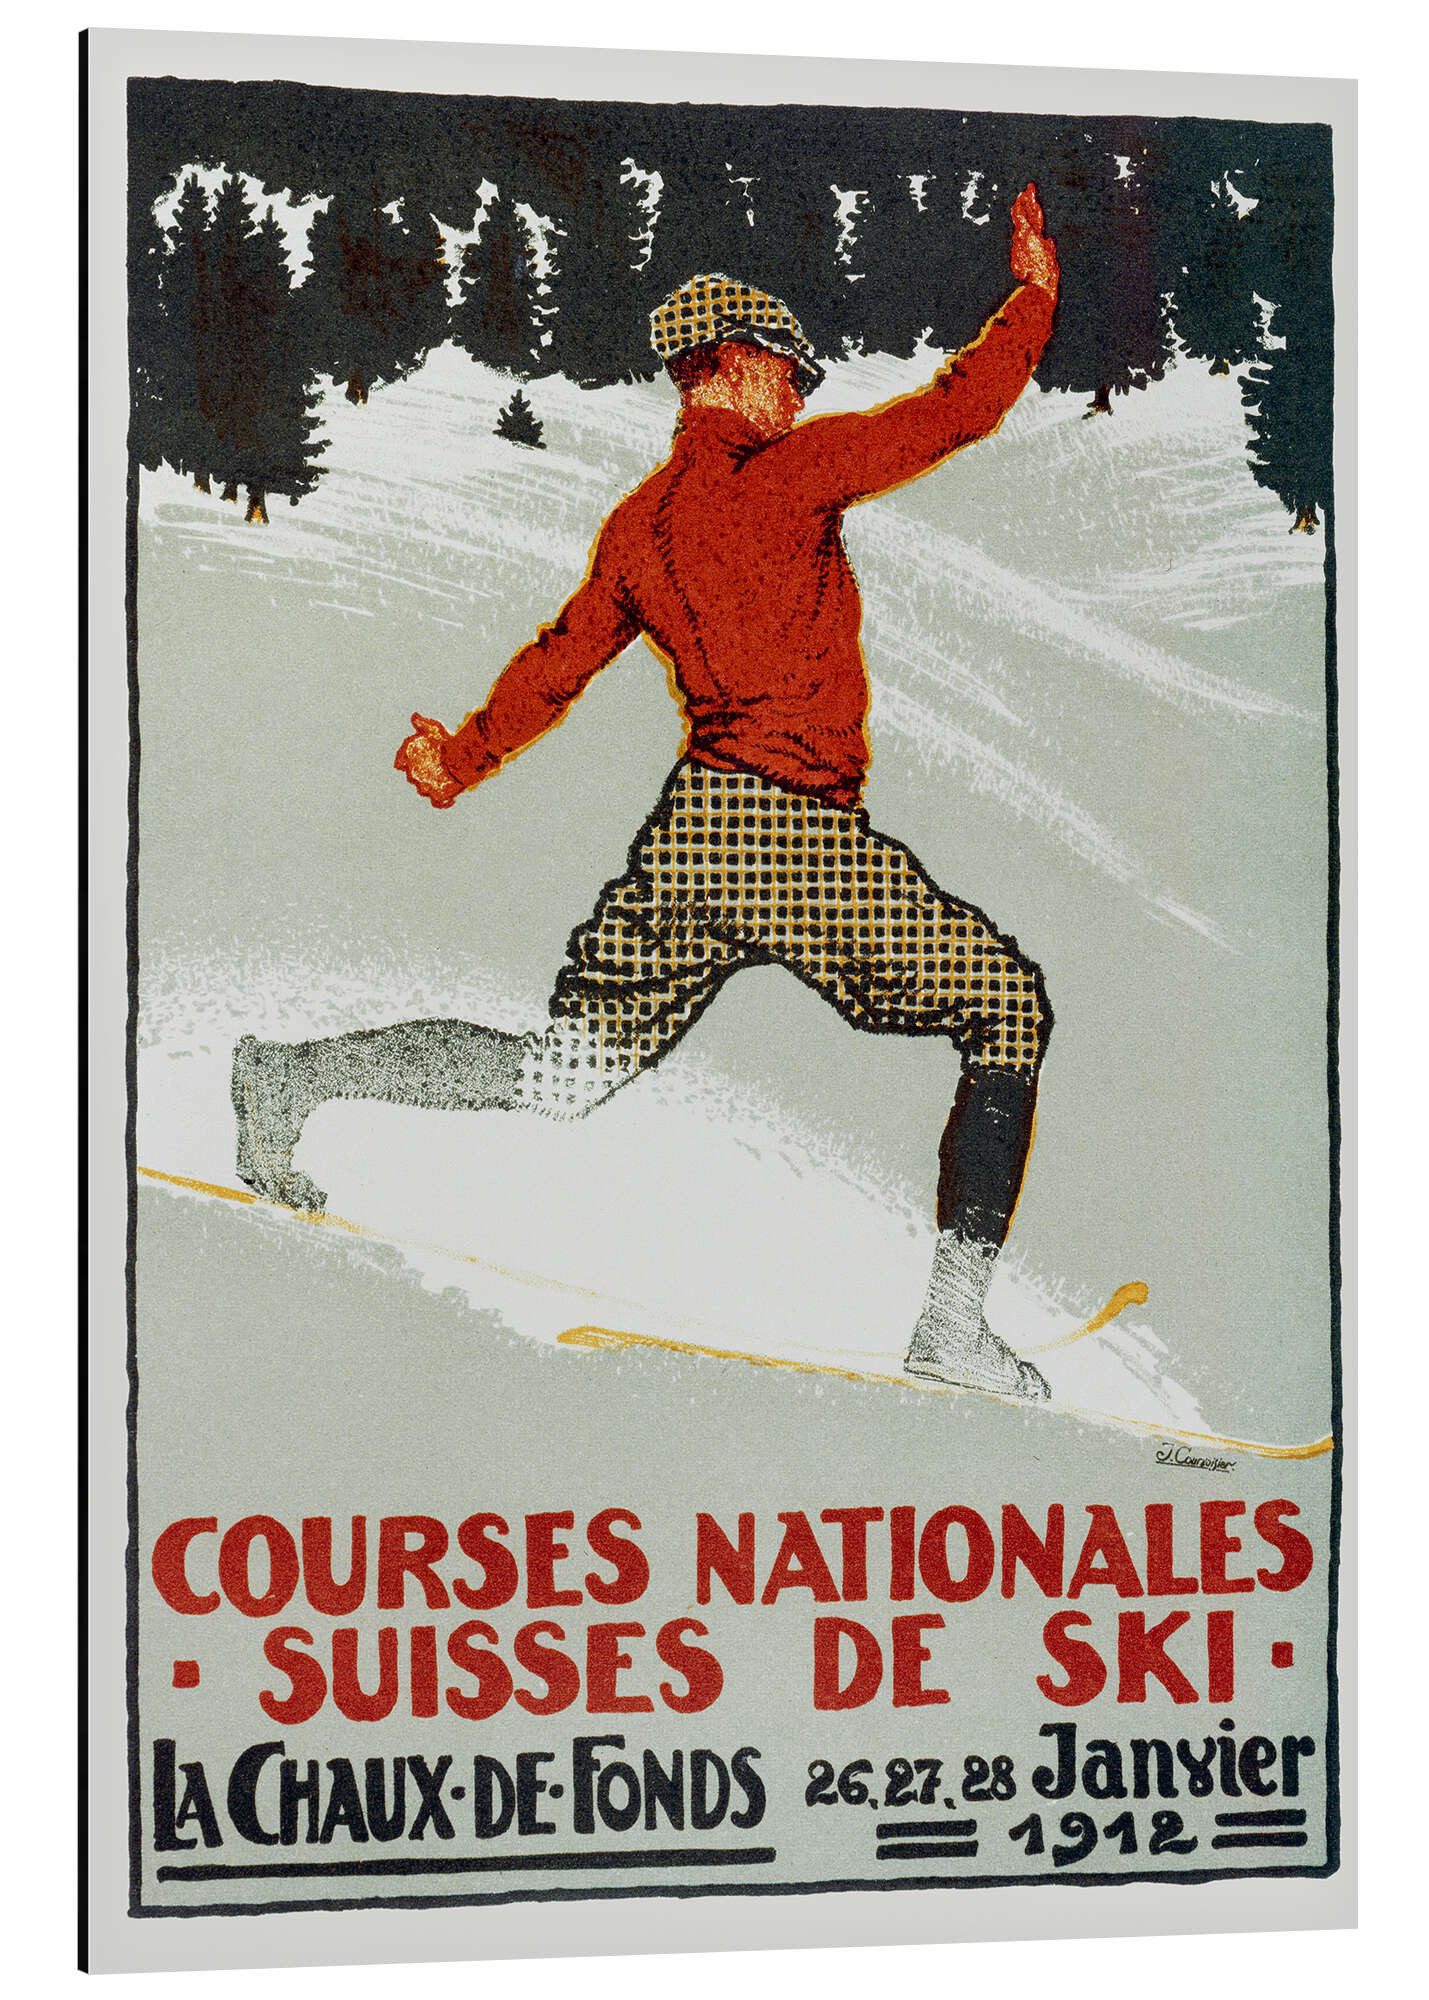 Posterlounge Alu-Dibond-Druck Jules Courvoisier, Courses nationales suisses de ski / La Chaux de Fonds, Illustration